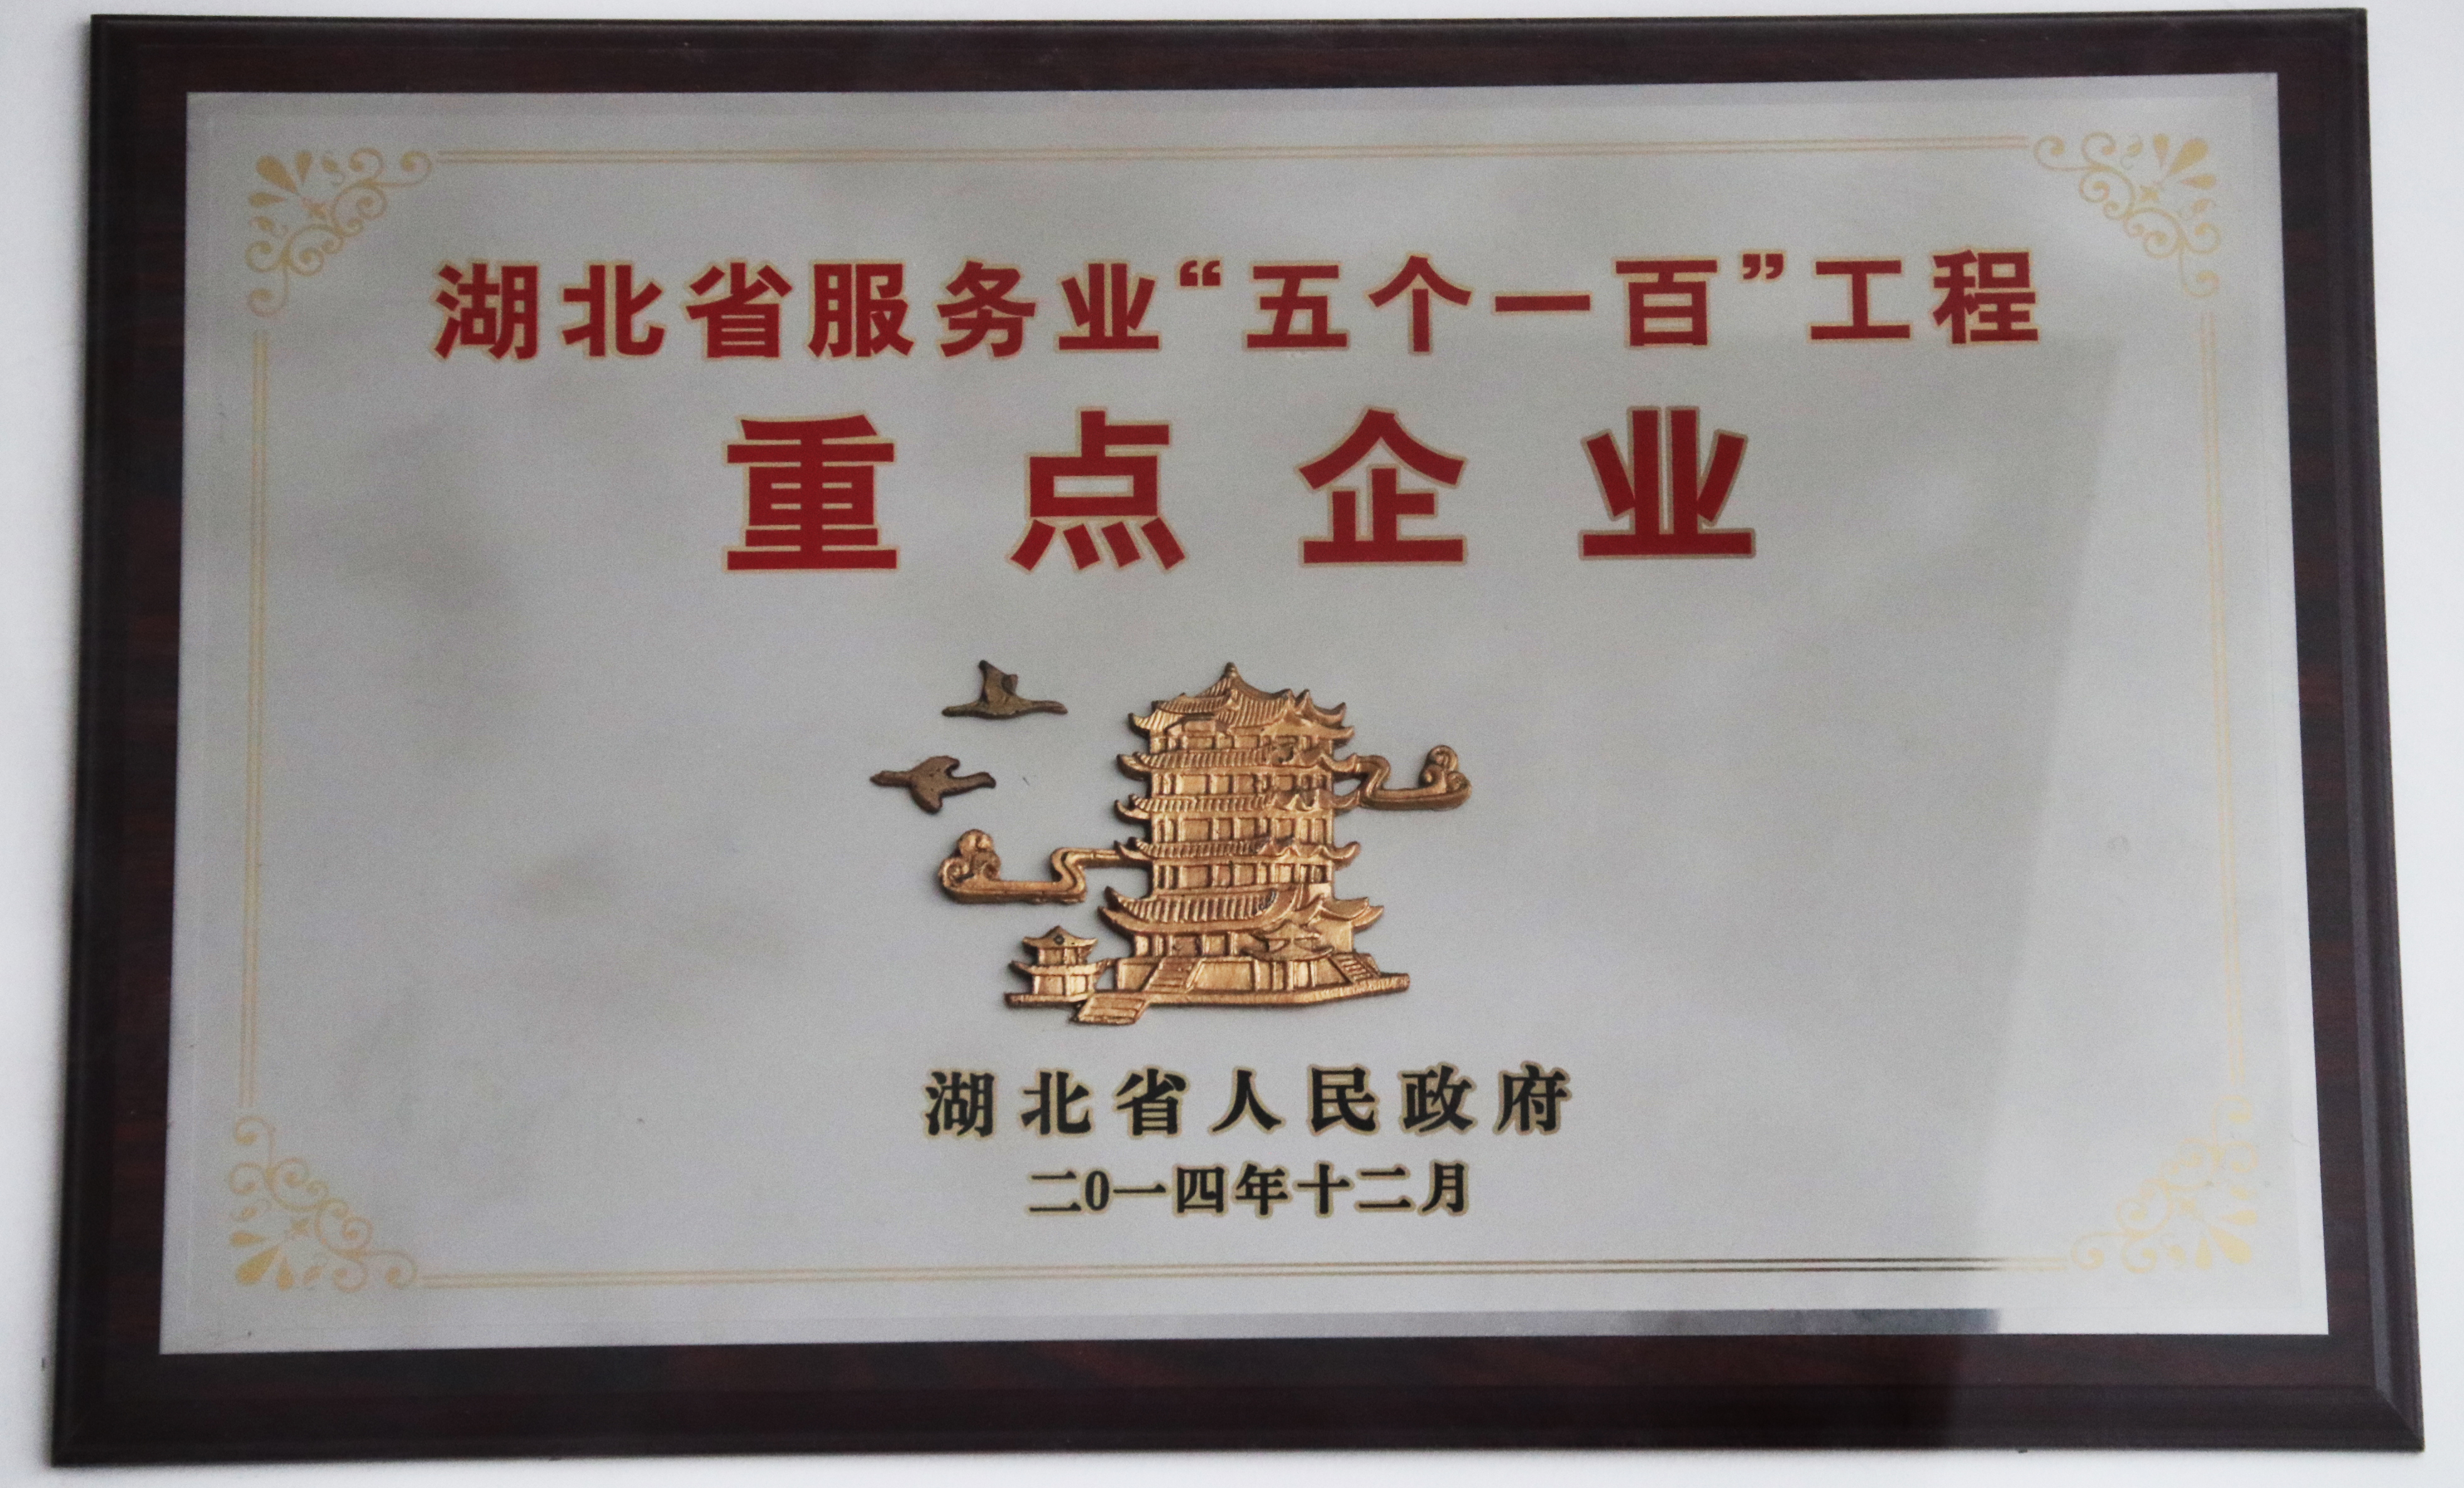 知音传媒集团被评为湖北省服务业“五个一百”工程重点企业